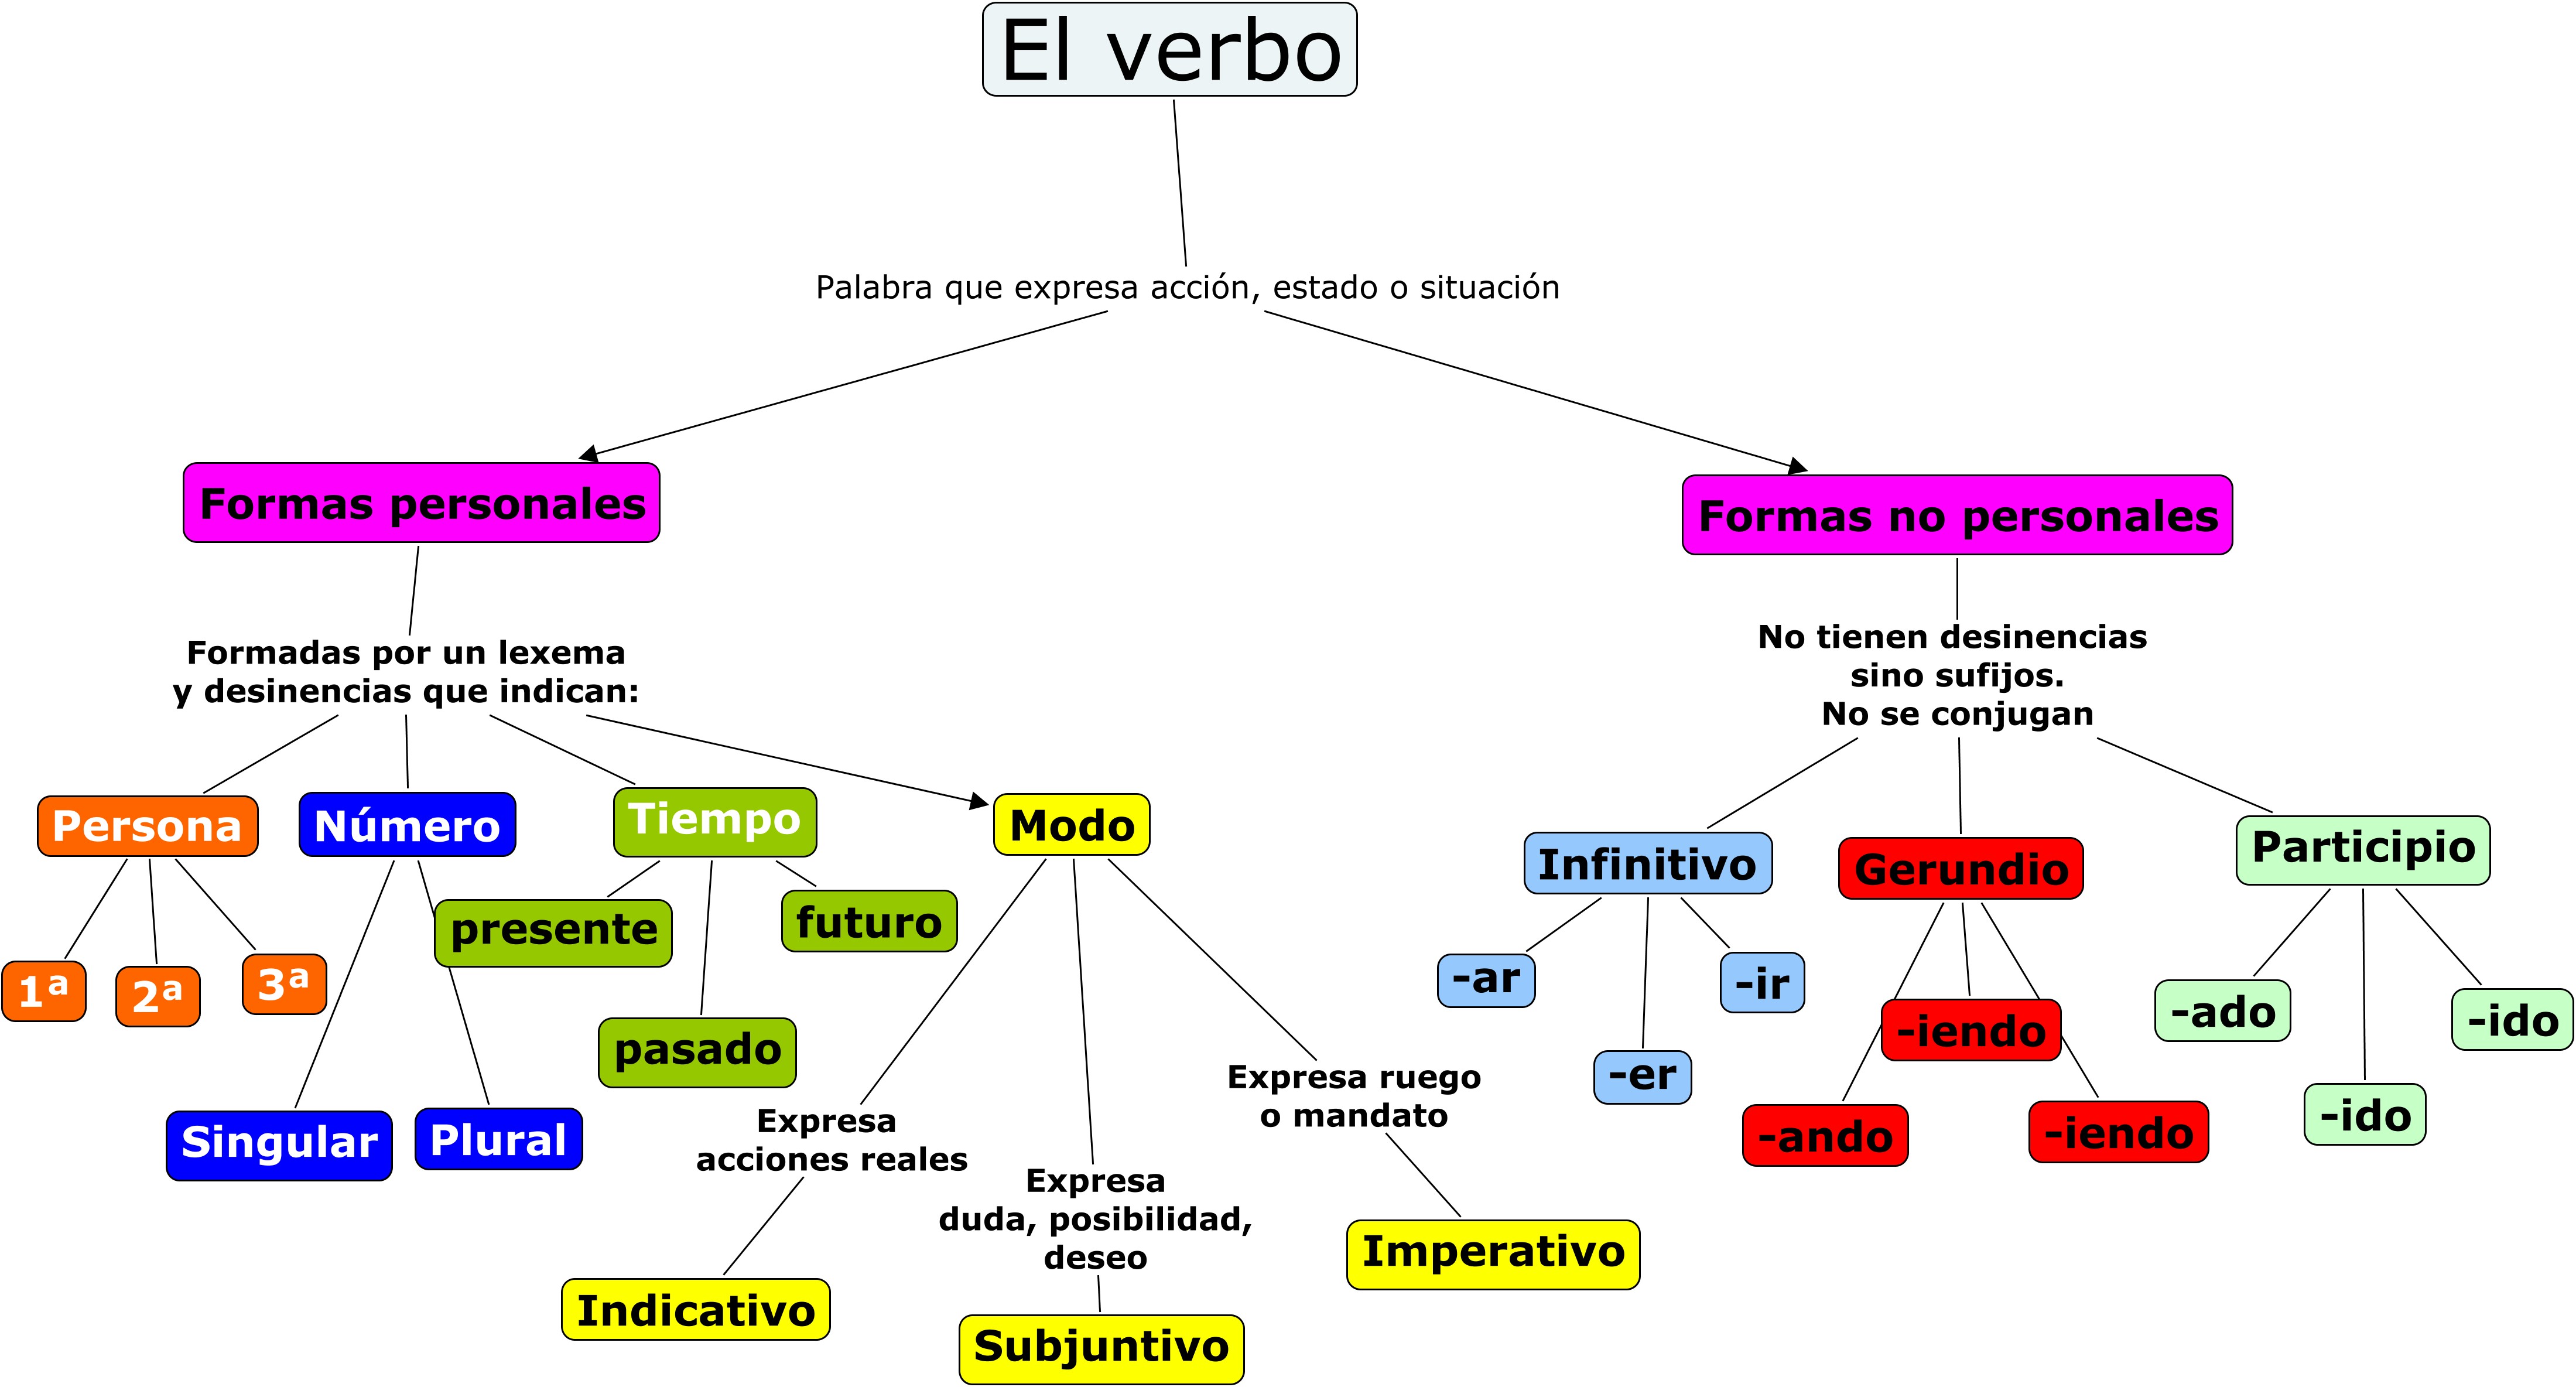 Resultado de imagen para mapa conceptual sobre el verbo